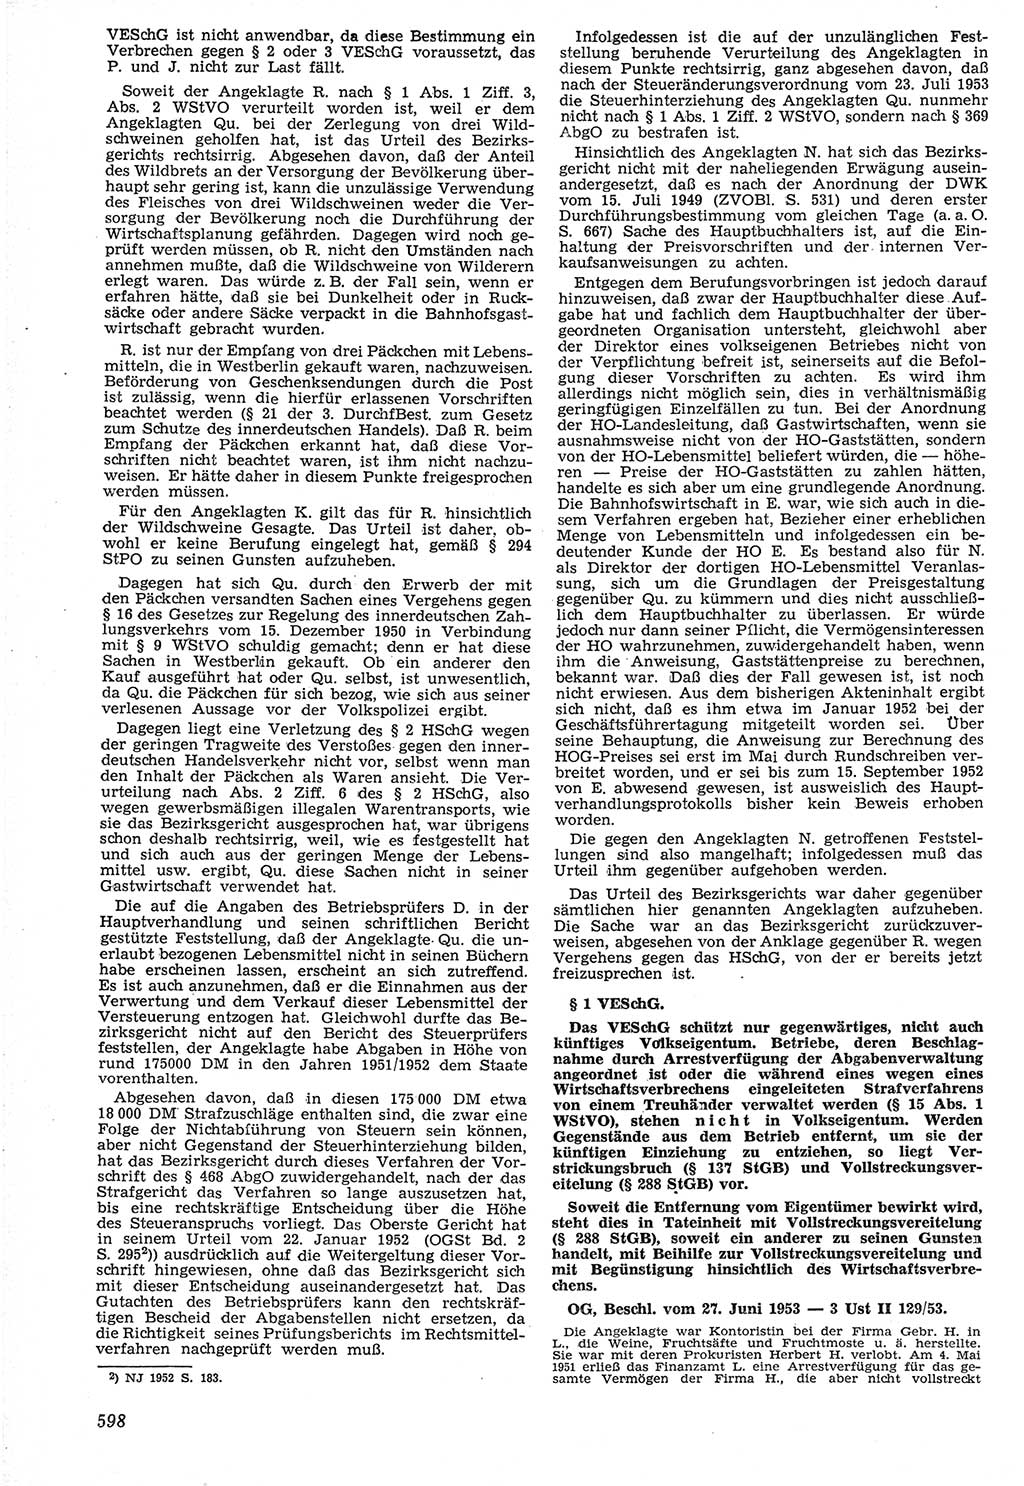 Neue Justiz (NJ), Zeitschrift für Recht und Rechtswissenschaft [Deutsche Demokratische Republik (DDR)], 7. Jahrgang 1953, Seite 598 (NJ DDR 1953, S. 598)